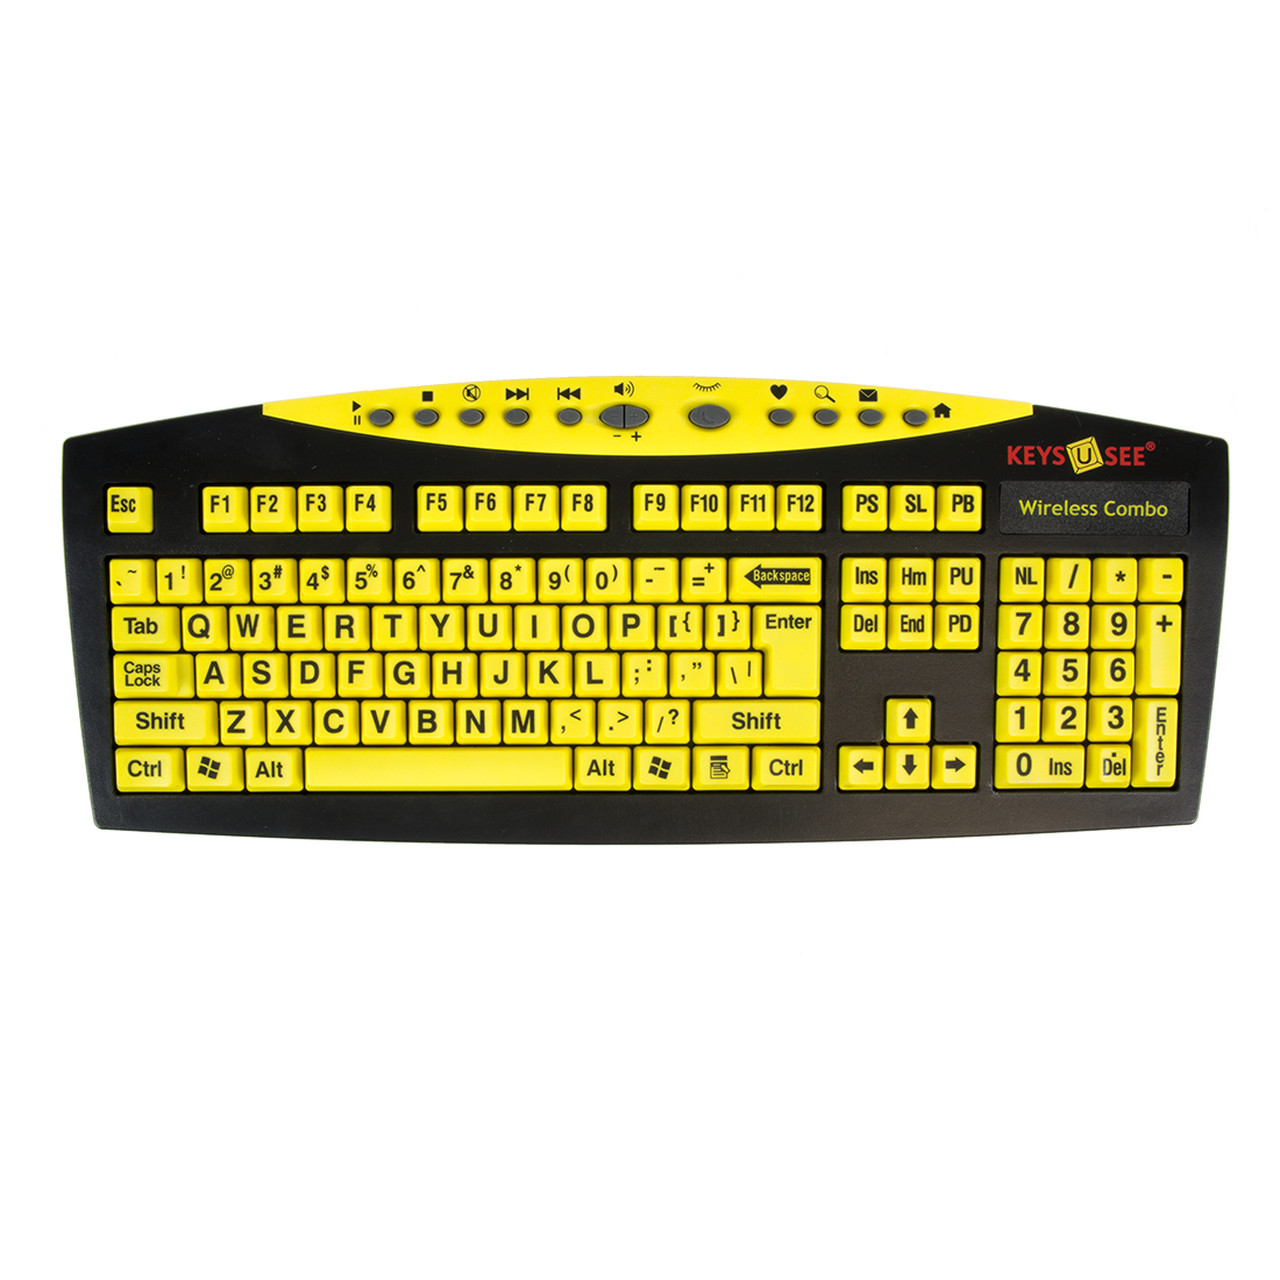 replica Lijkenhuis tweedehands Grootletter toetsenbord en muis Keys-U-See zwart op geel draadloos